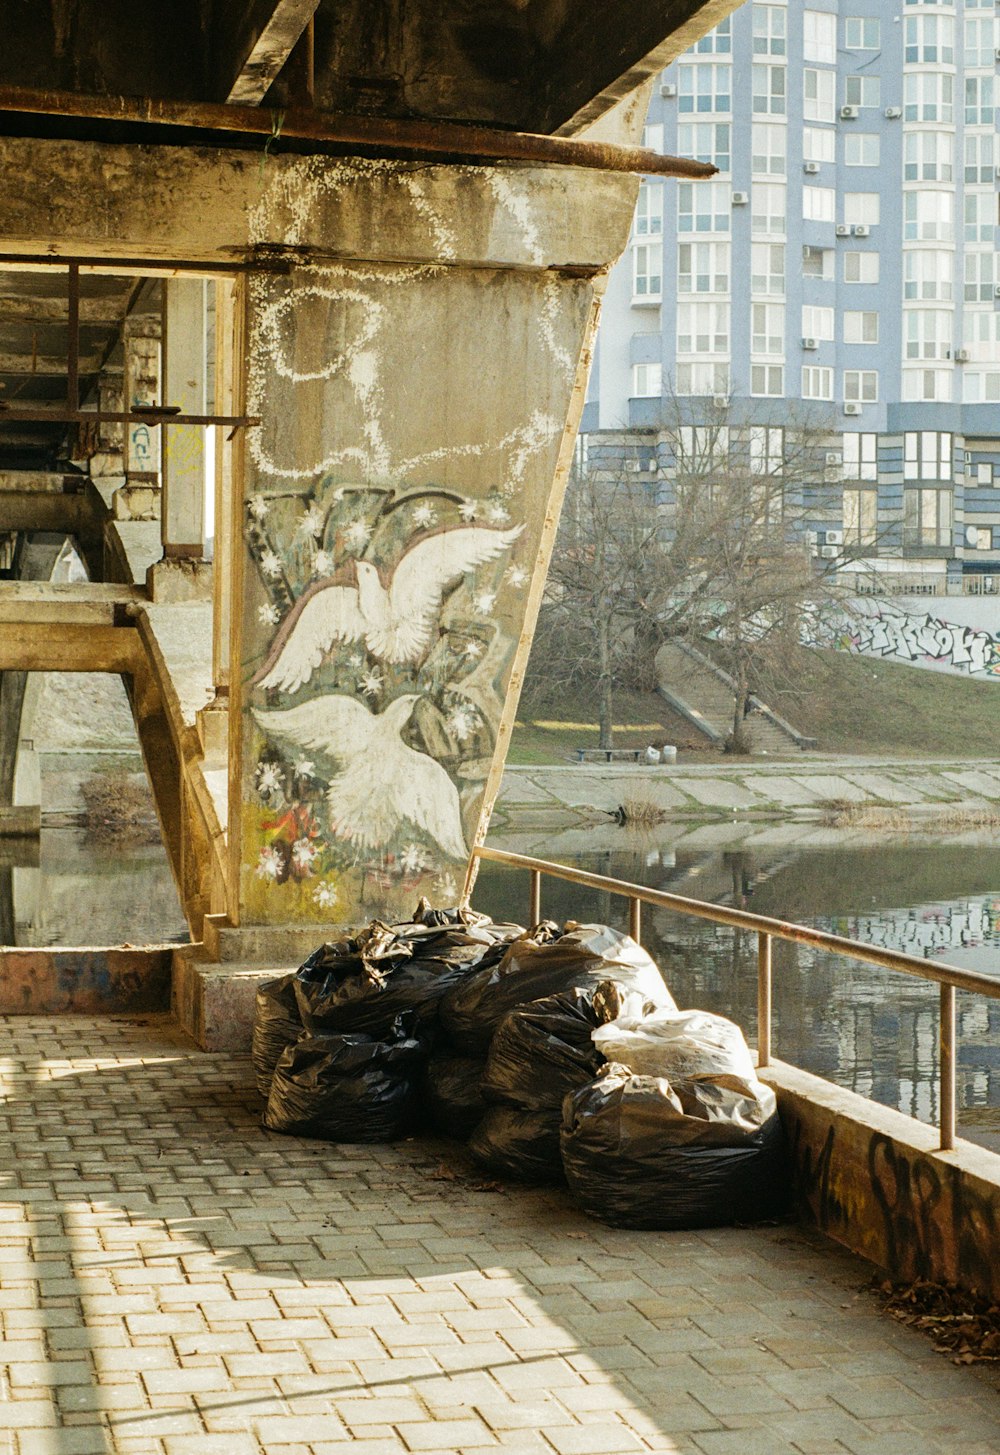 건물 측면에 쌓여 있는 쓰레기 봉투